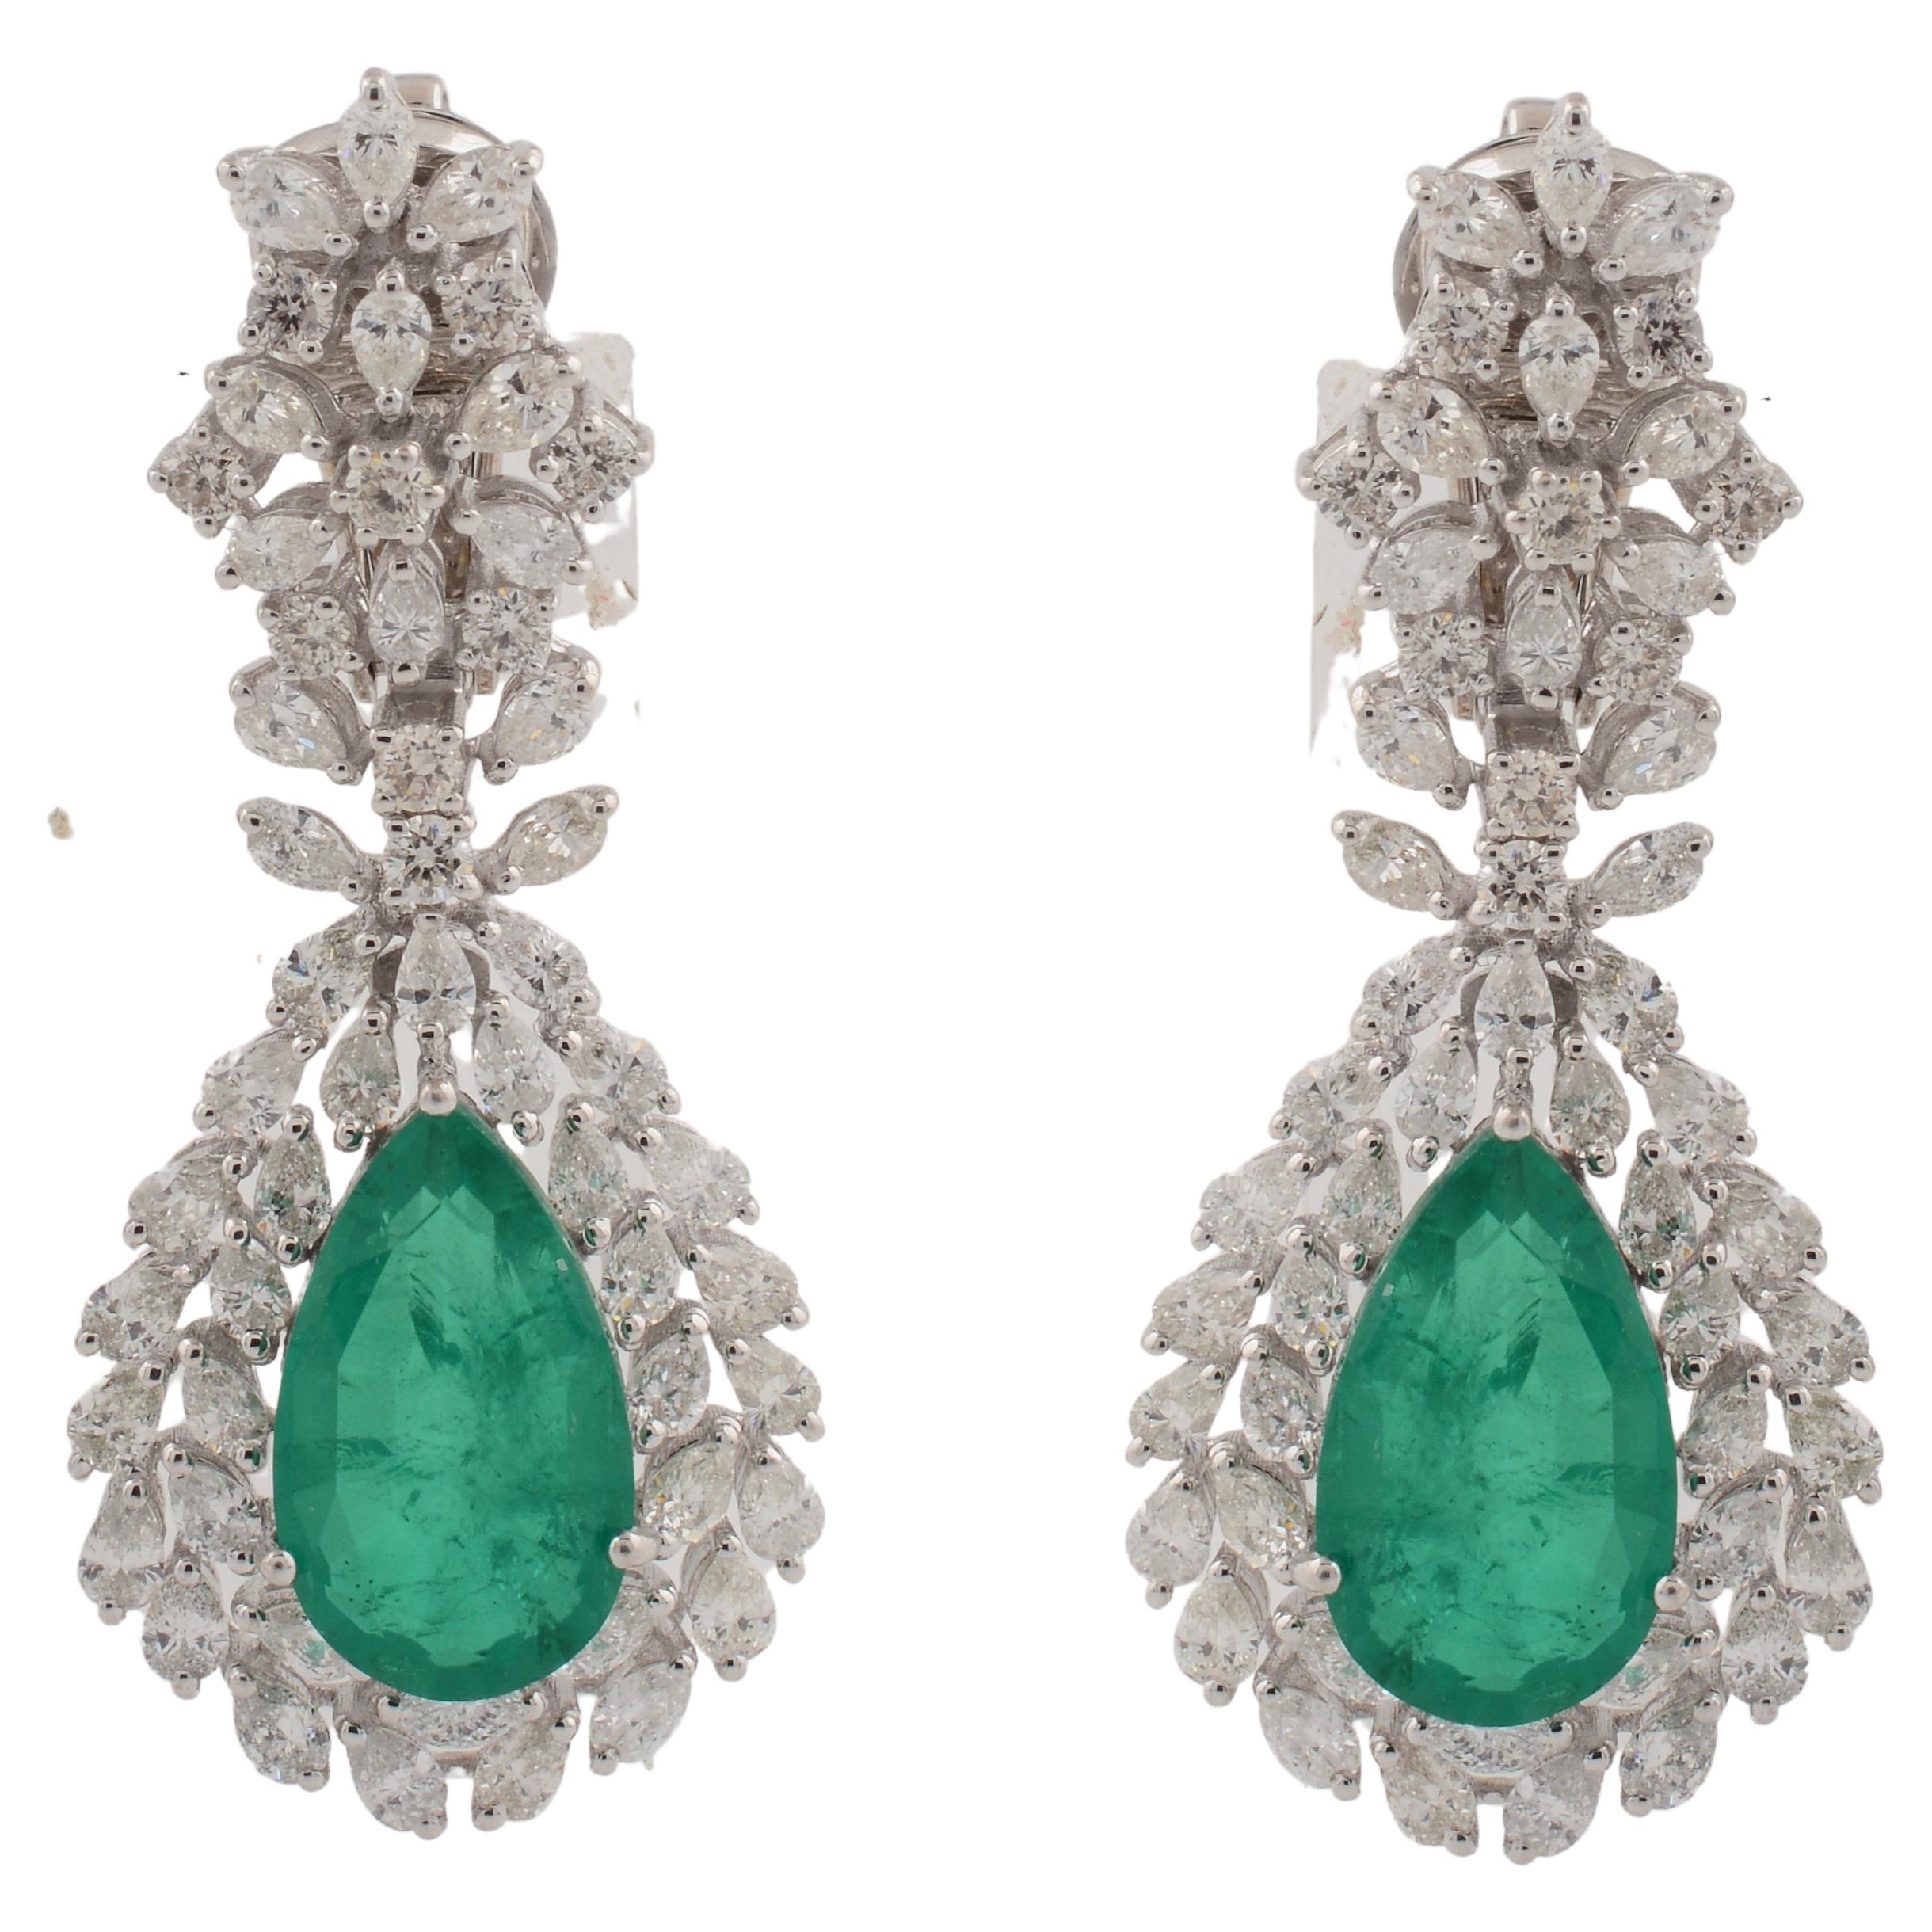 Boucles d'oreilles pendantes en or blanc 18 carats avec pierres vertes en forme de poire et diamants